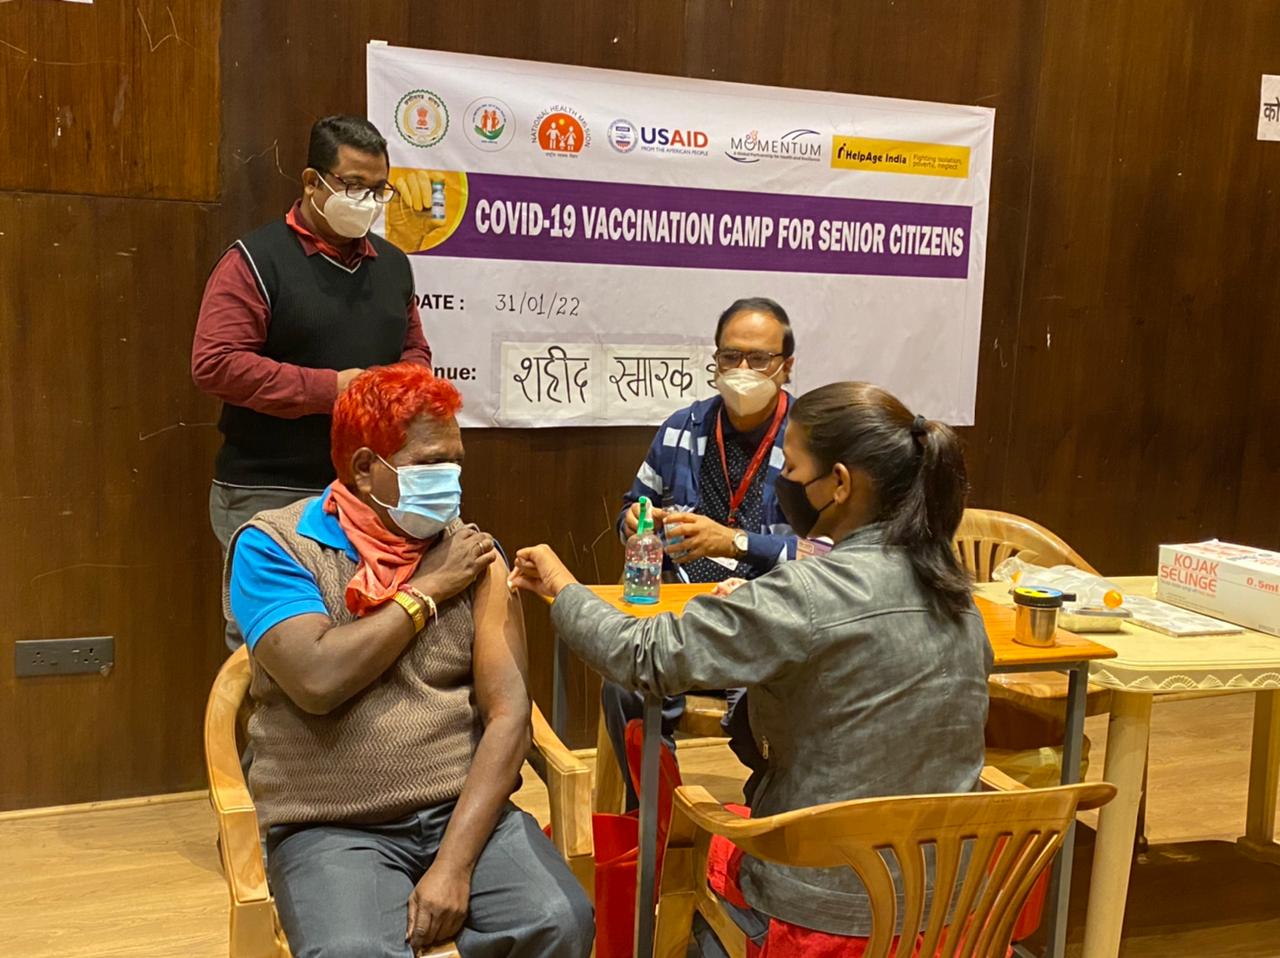 MRITE परियोजना के तहत एक COVID-19 टीकाकरण शिविर का हुआ आयोजन